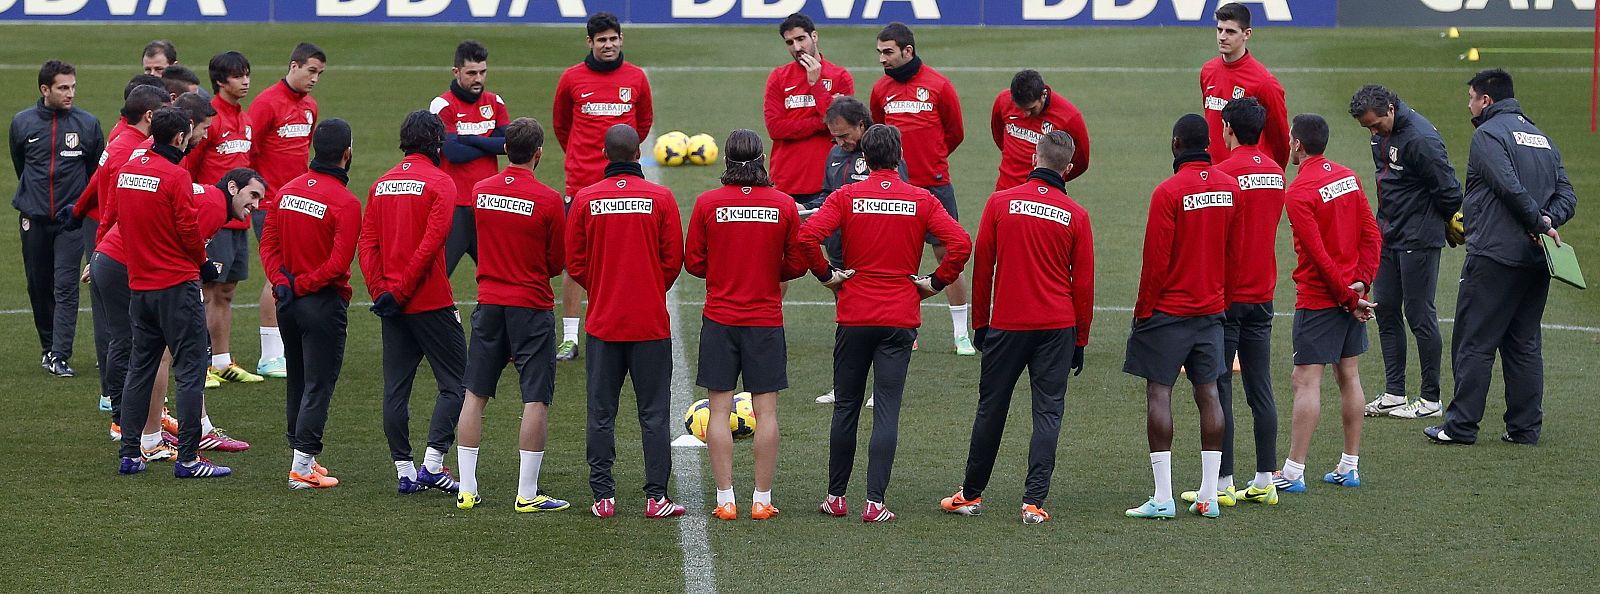 Los jugadores del Atlético de Madrid, durante un entrenamiento.